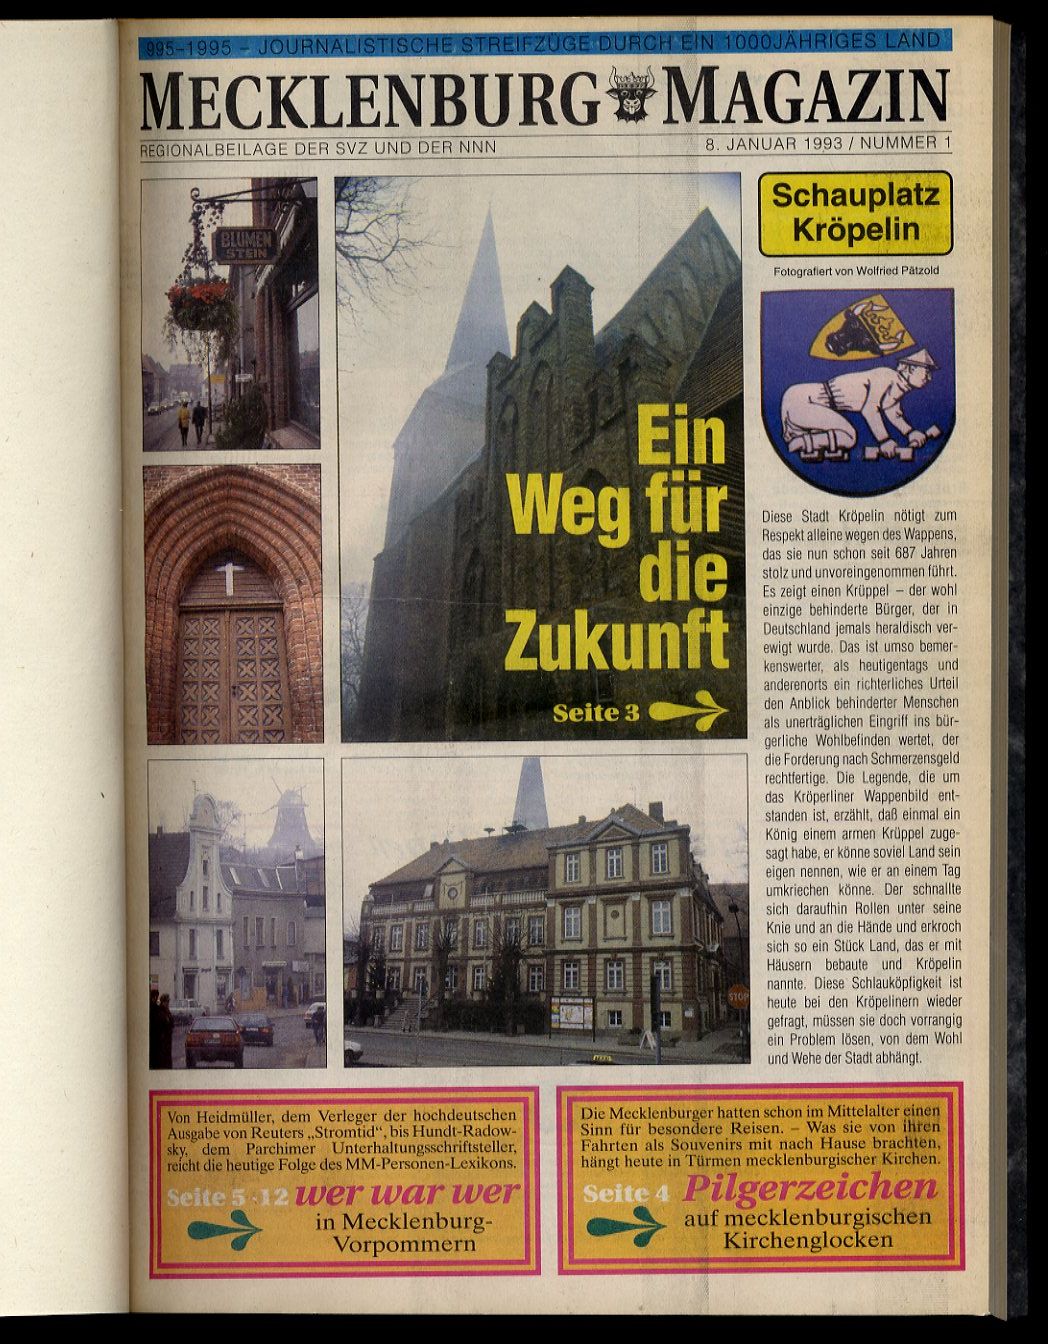   Mecklenburg-Magazin. Regionalbeilage der Schweriner Volkszeitung und der Norddeutschen Neuesten Nachrichten. Band 4. 